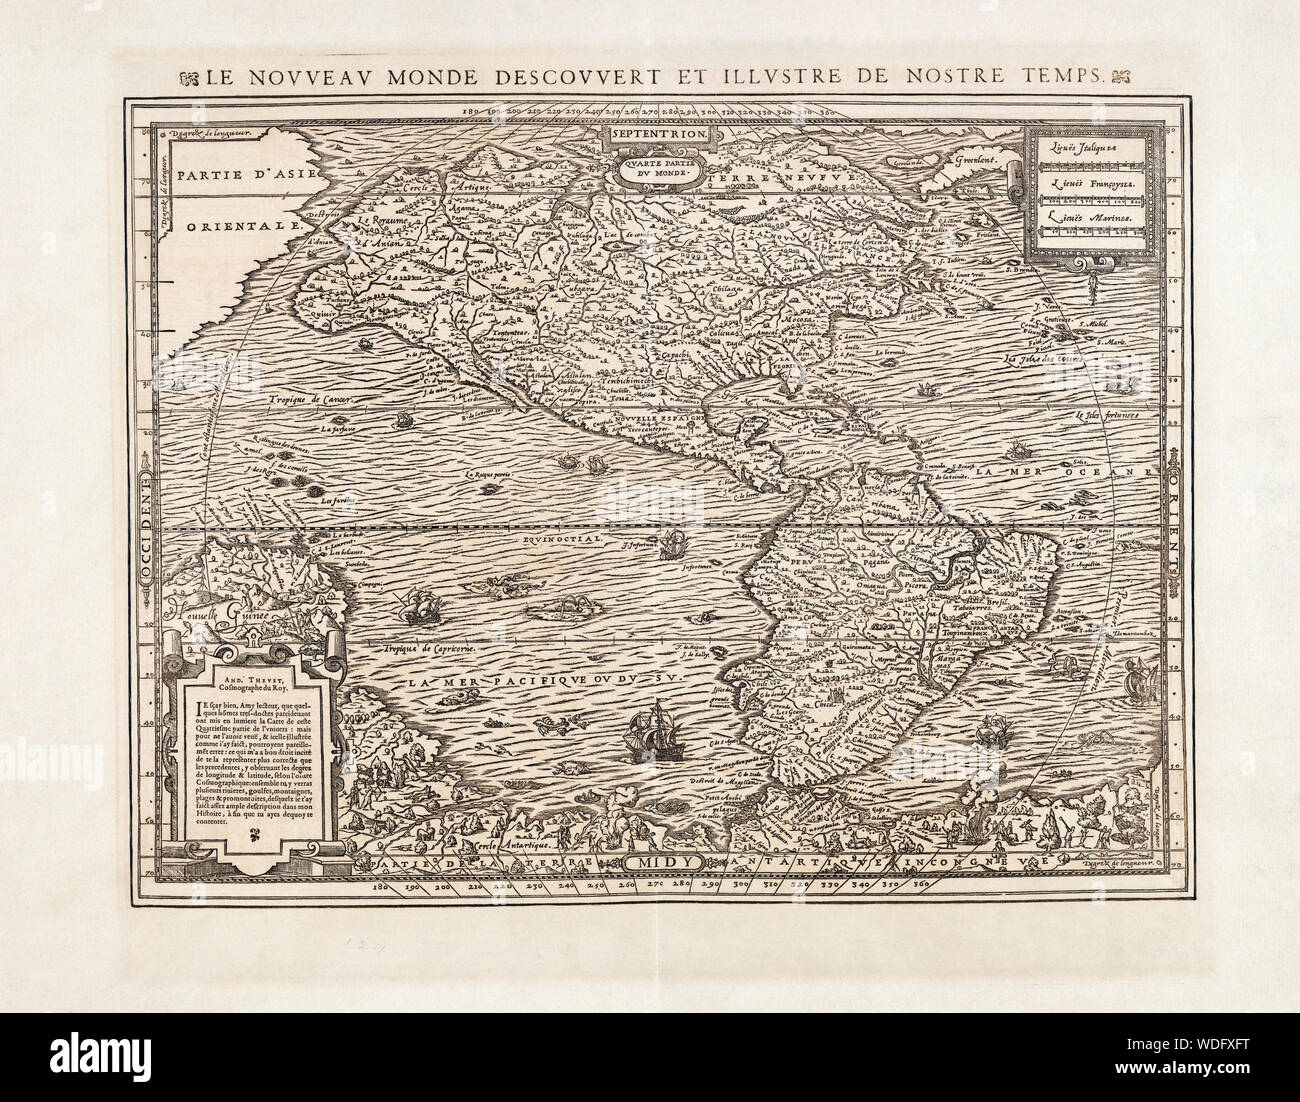 Mapa de América del Norte y del Sur por André Thevet, 1516 - 1590. Thevet fue un sacerdote franciscano francés, autor y viajero. Foto de stock